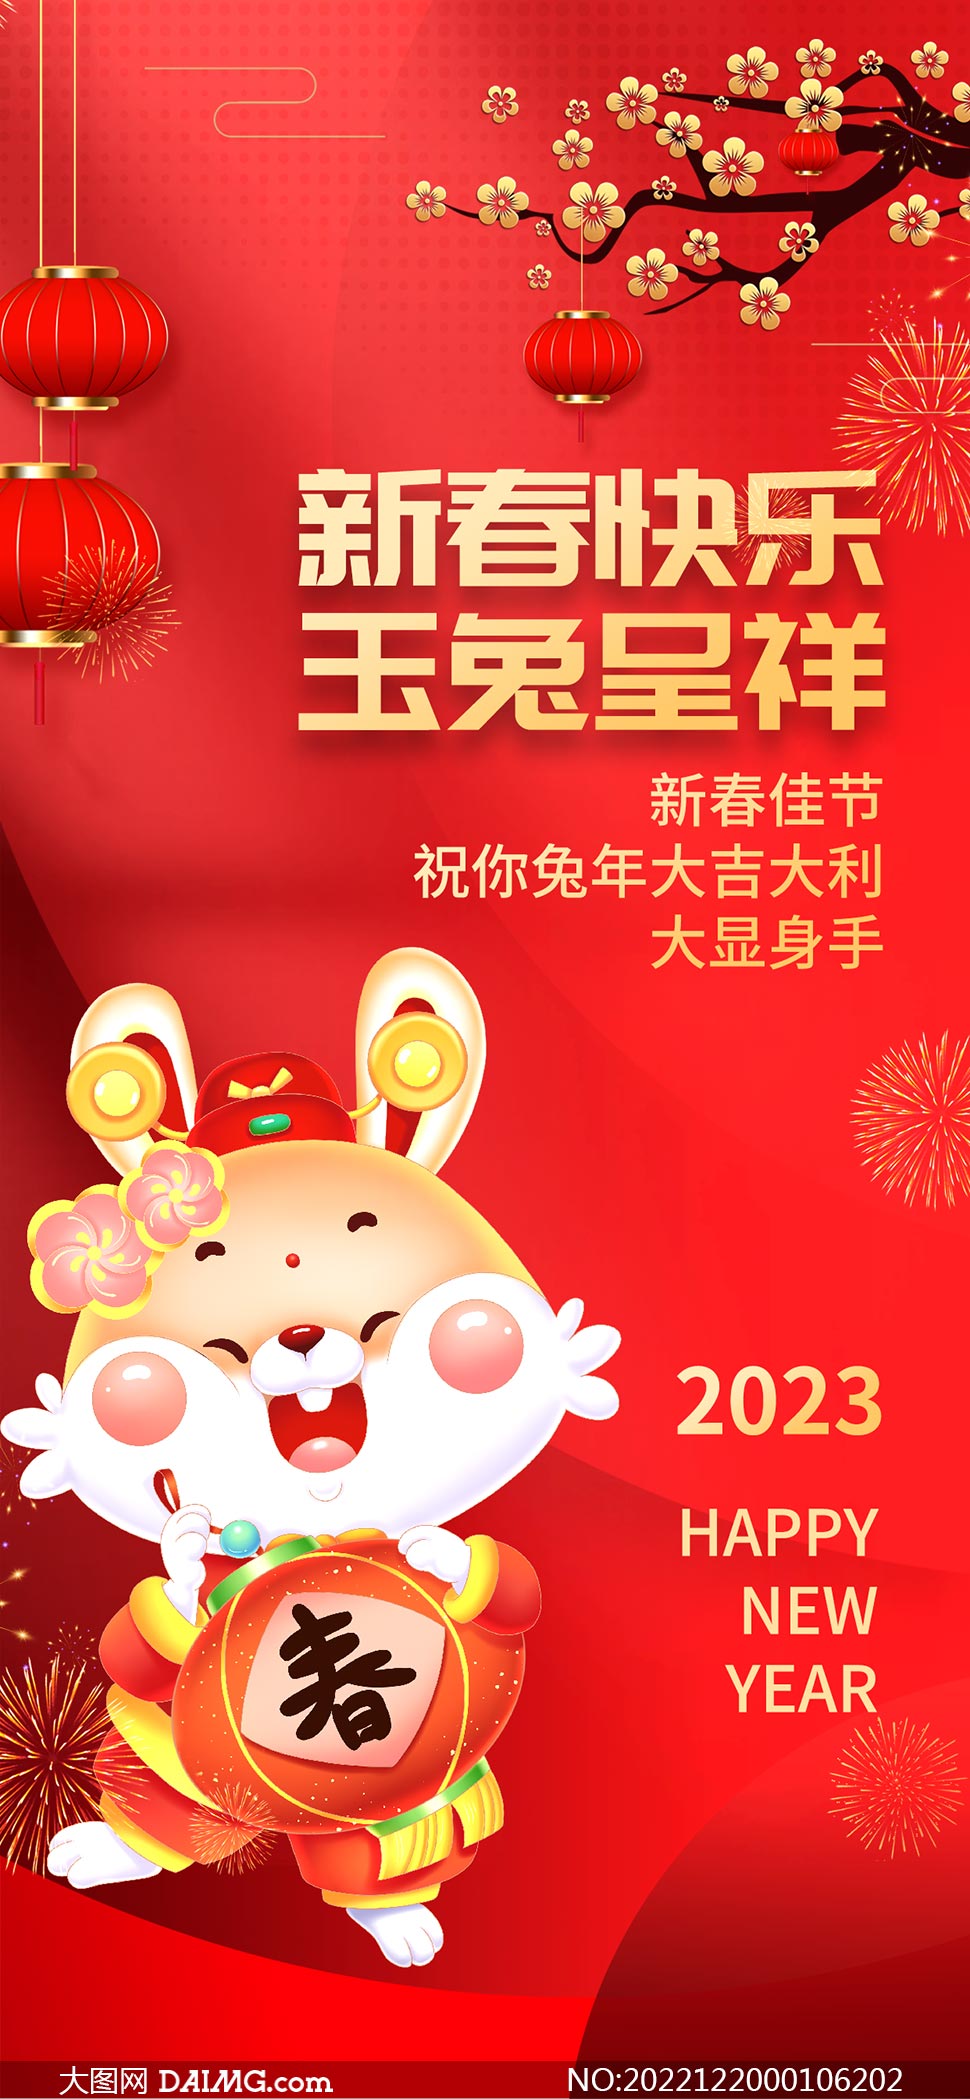 2023兔年新春快乐移动端海报设计PSD素材